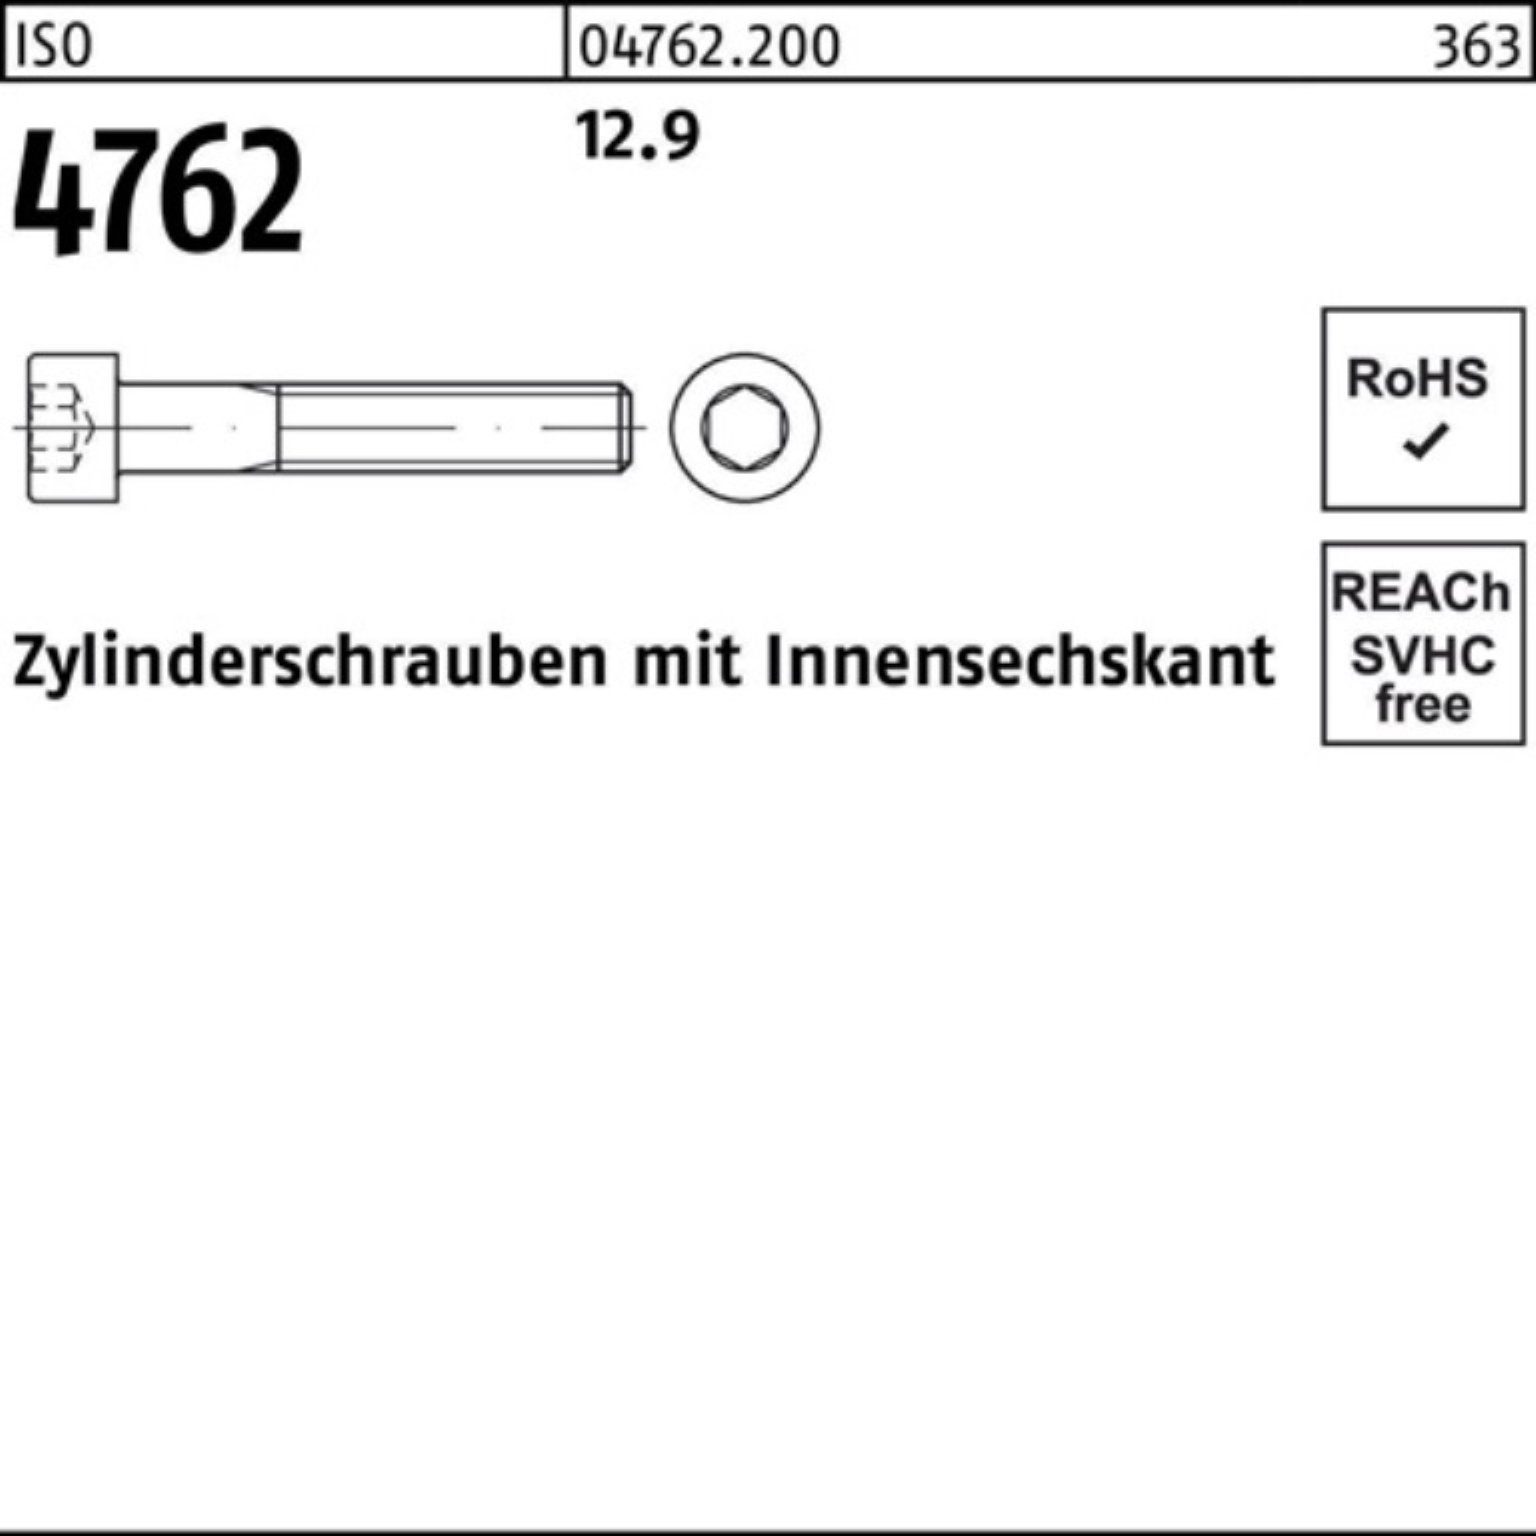 500er 12 Zylinderschraube Stück Pack Innen-6kt 12.9 Zylinderschraube Reyher 4762 ISO 500 M6x